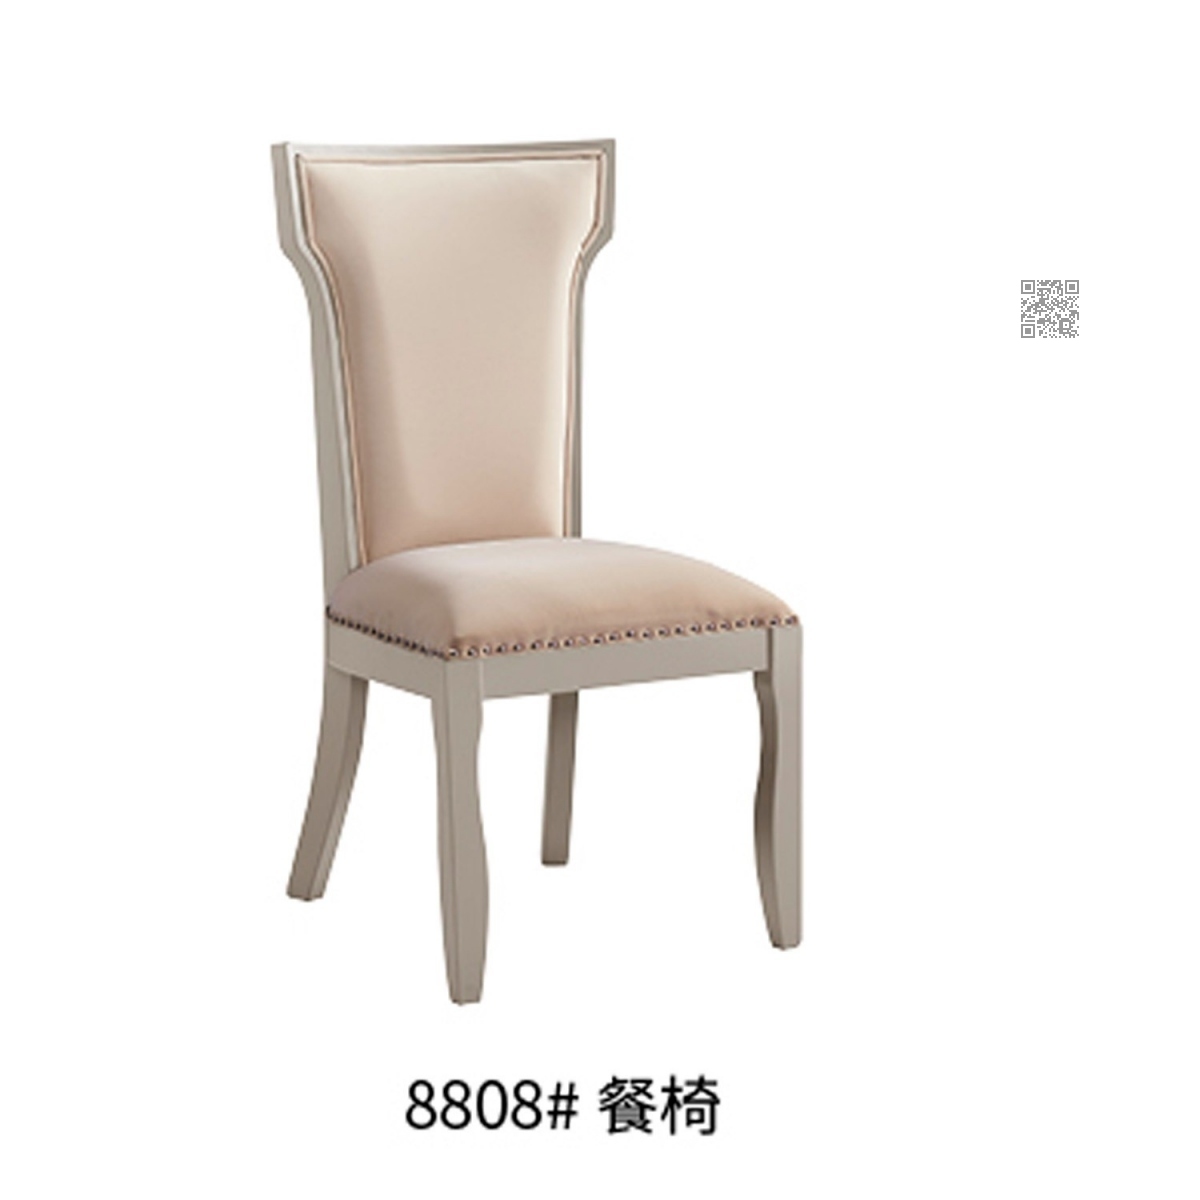 8808 餐椅